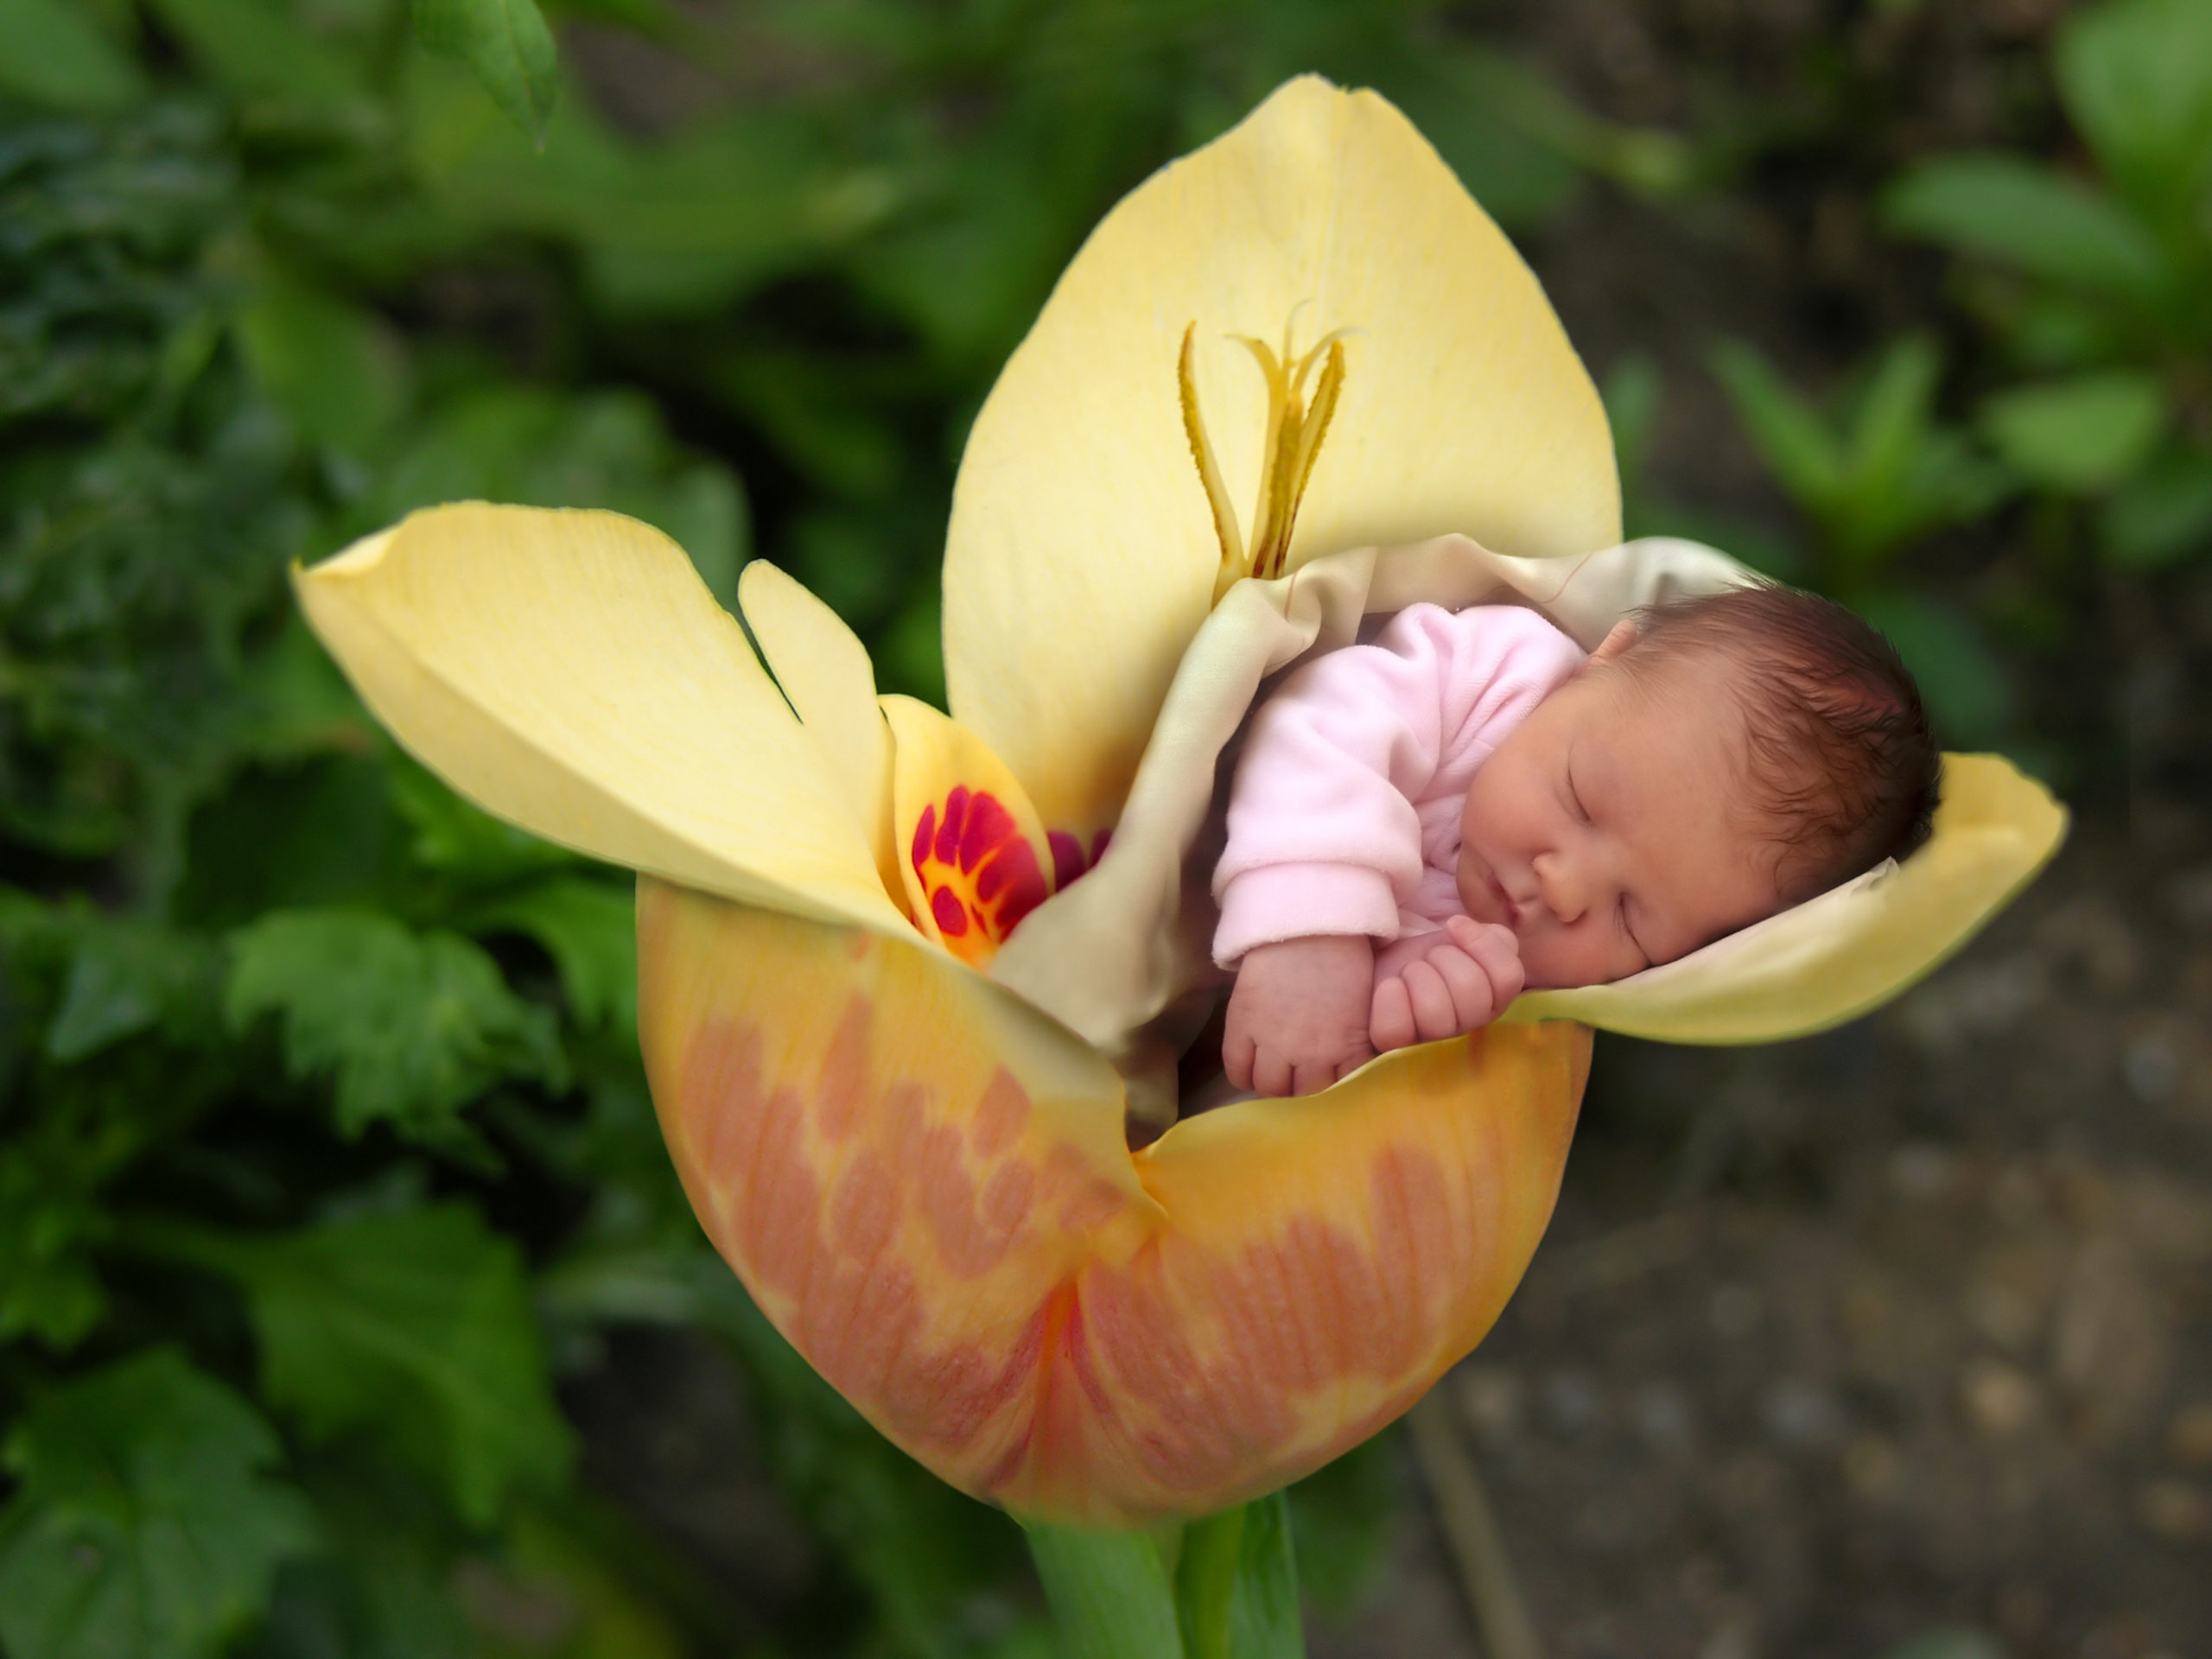 Bebés que nacen por terapias de fertilidad “serían más pequeños”